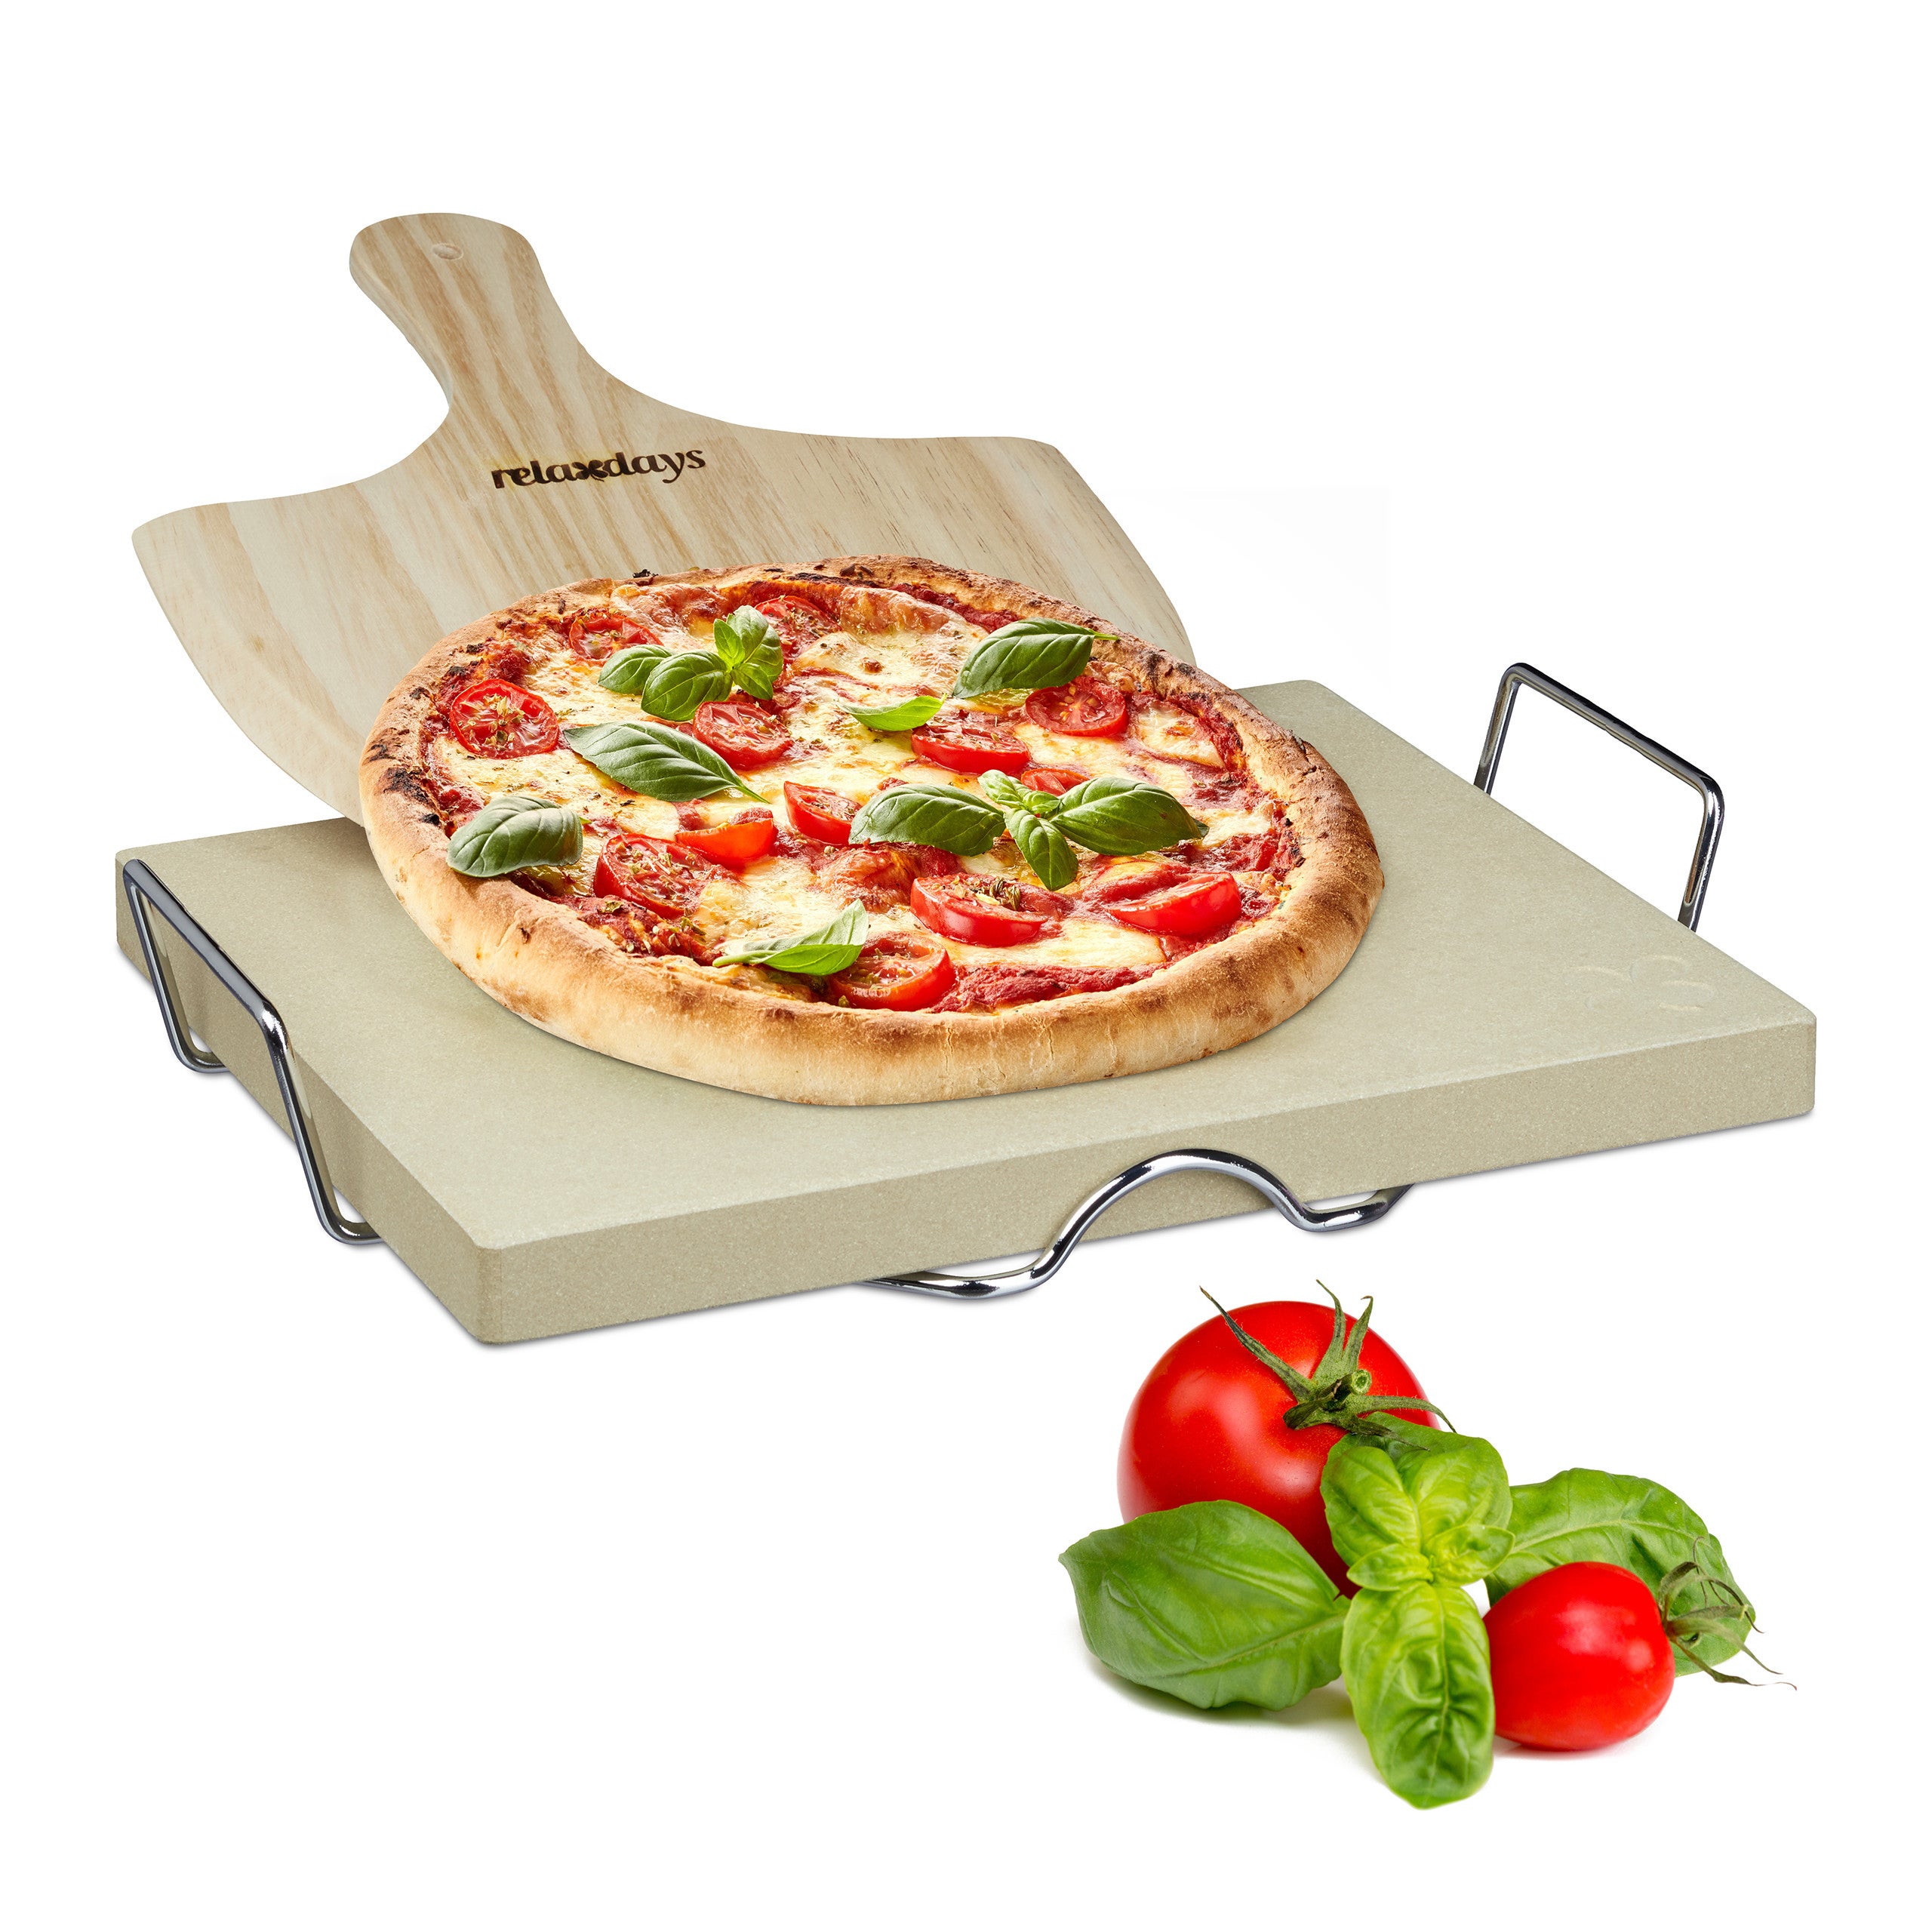 Relaxdays Pietra Refrattaria, Set per Pizza, Ollare Spessa 3 cm, Pala in  Legno, Cordierite Rettangolare, Colore naturale